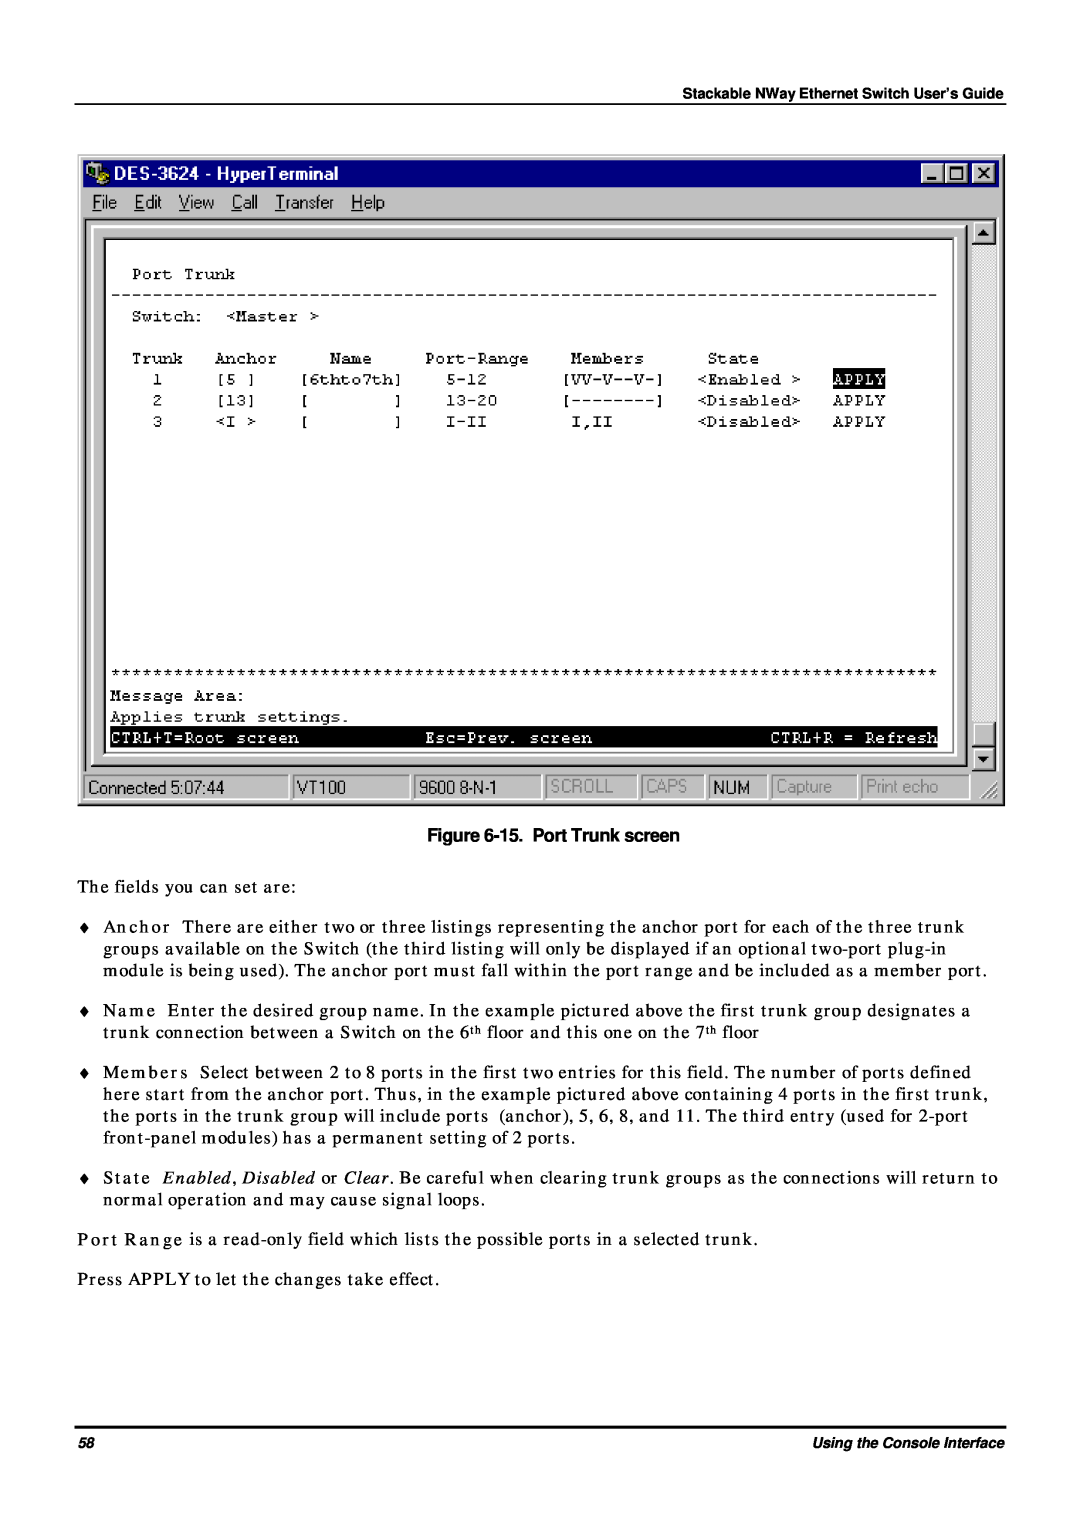 D-Link DES-3624 manual 15. Port Trunk screen 